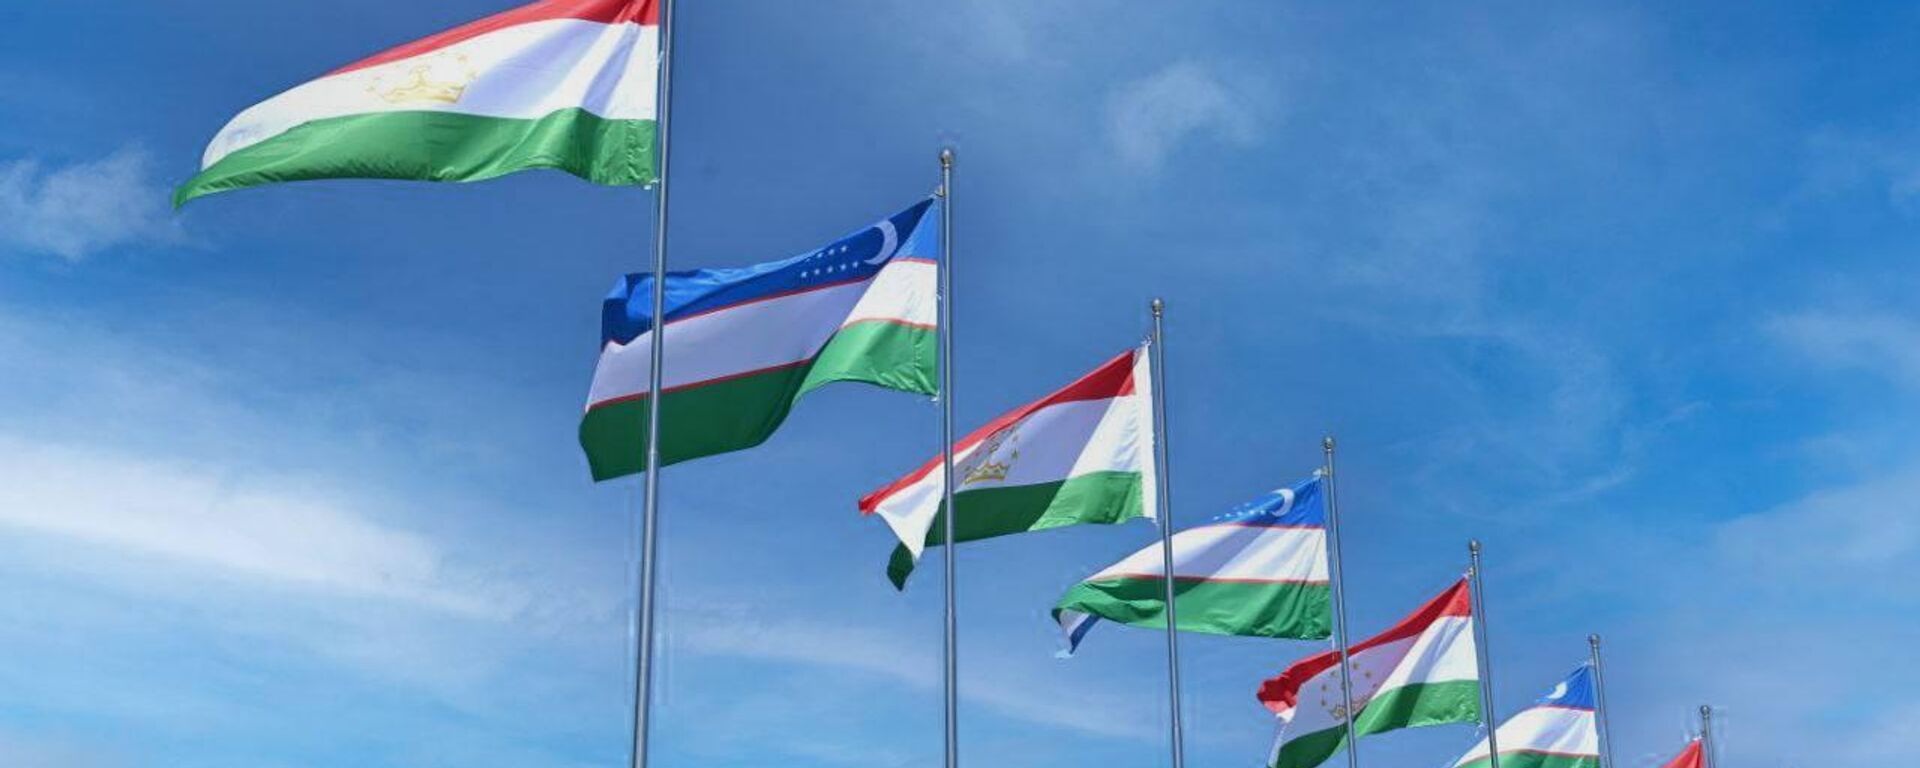 Национальные флаги Узбекистана и Таджикистана - Sputnik Тоҷикистон, 1920, 26.11.2022